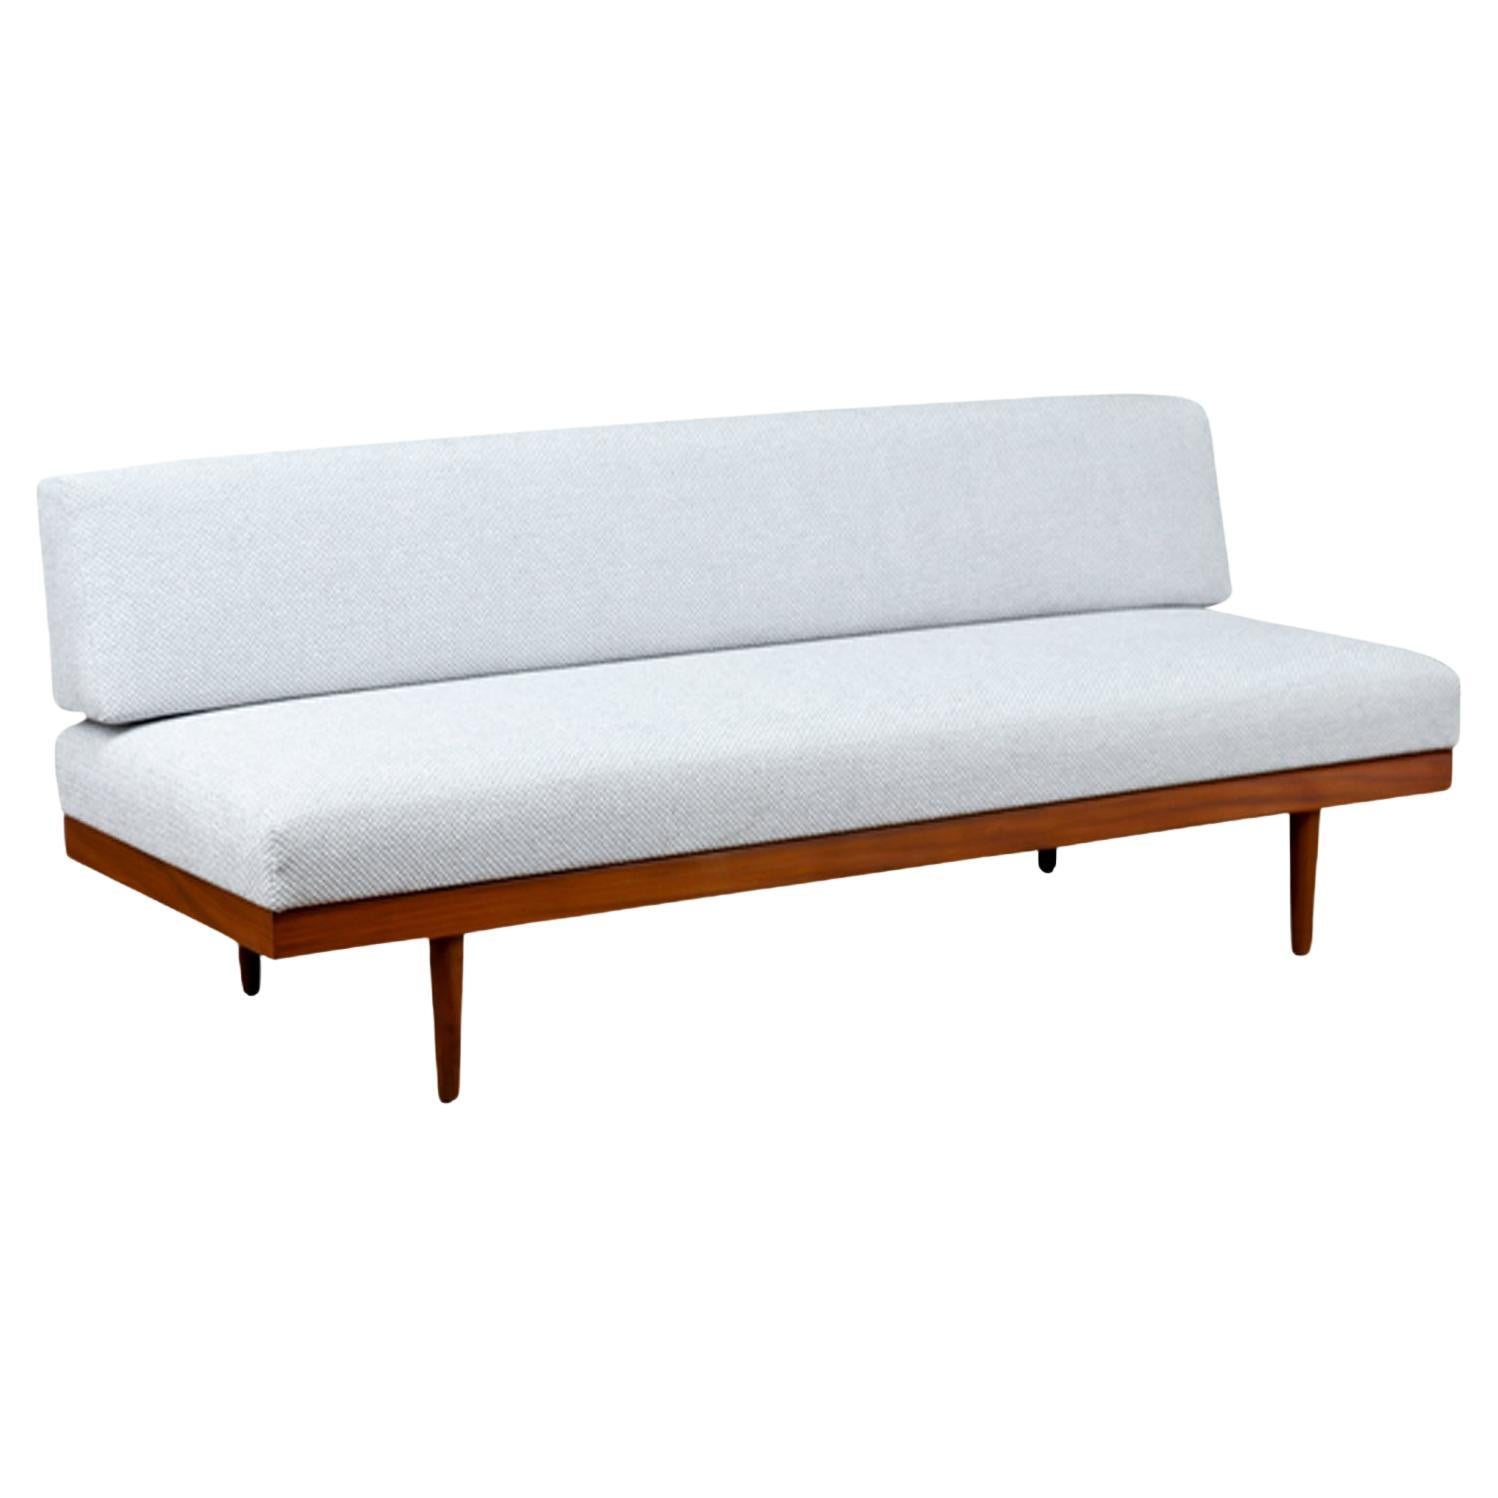 Expertly Restored - Edvard Kindt-Larsen Teak Daybed Sofa for Gustav Bahus For Sale